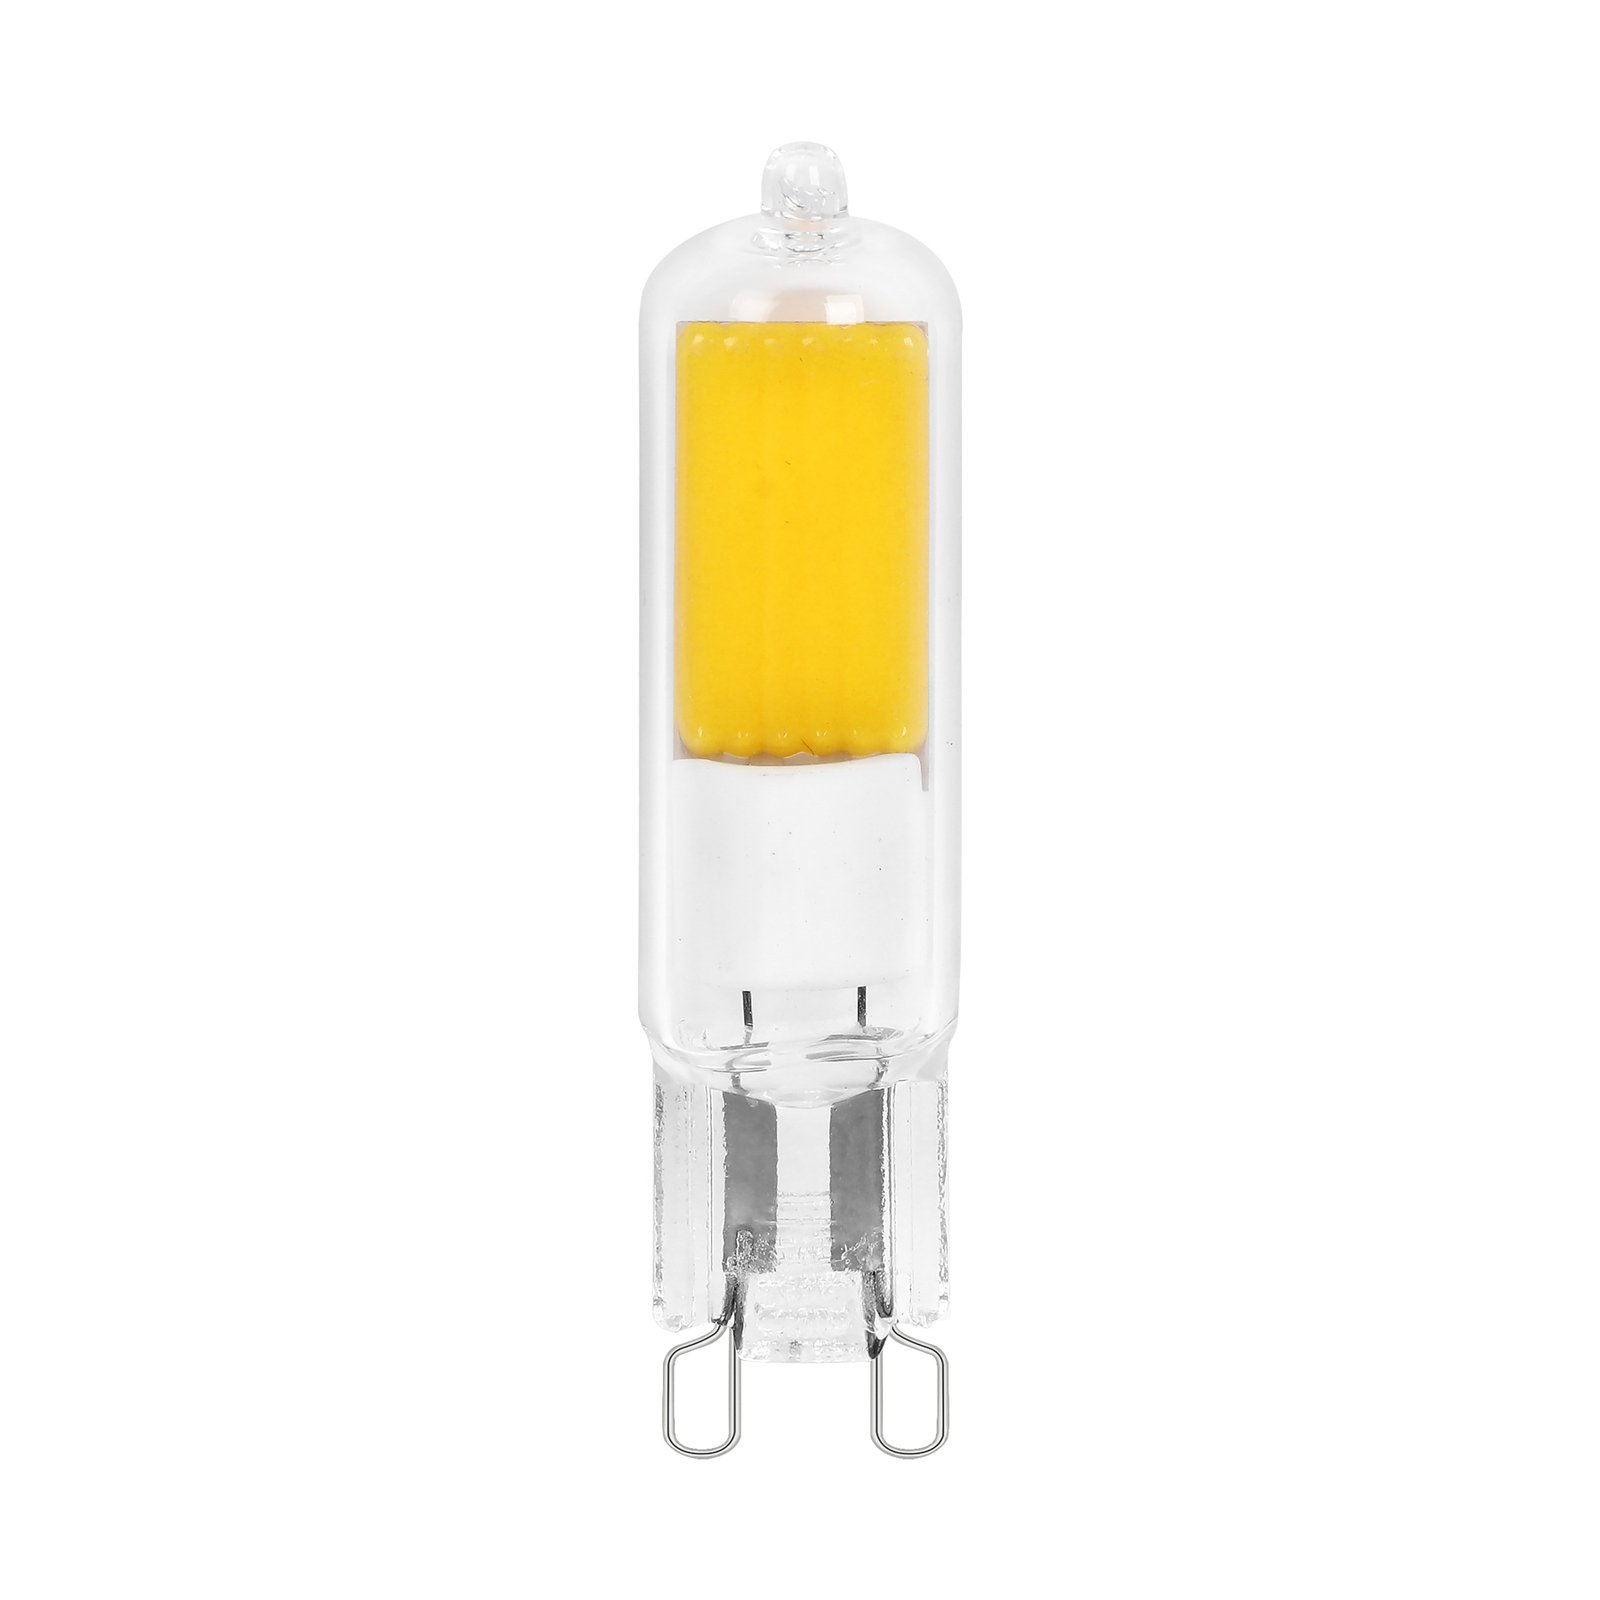 Arcchio bi-pin LED bulb, G9, 2.2W, 2700K, set of 10